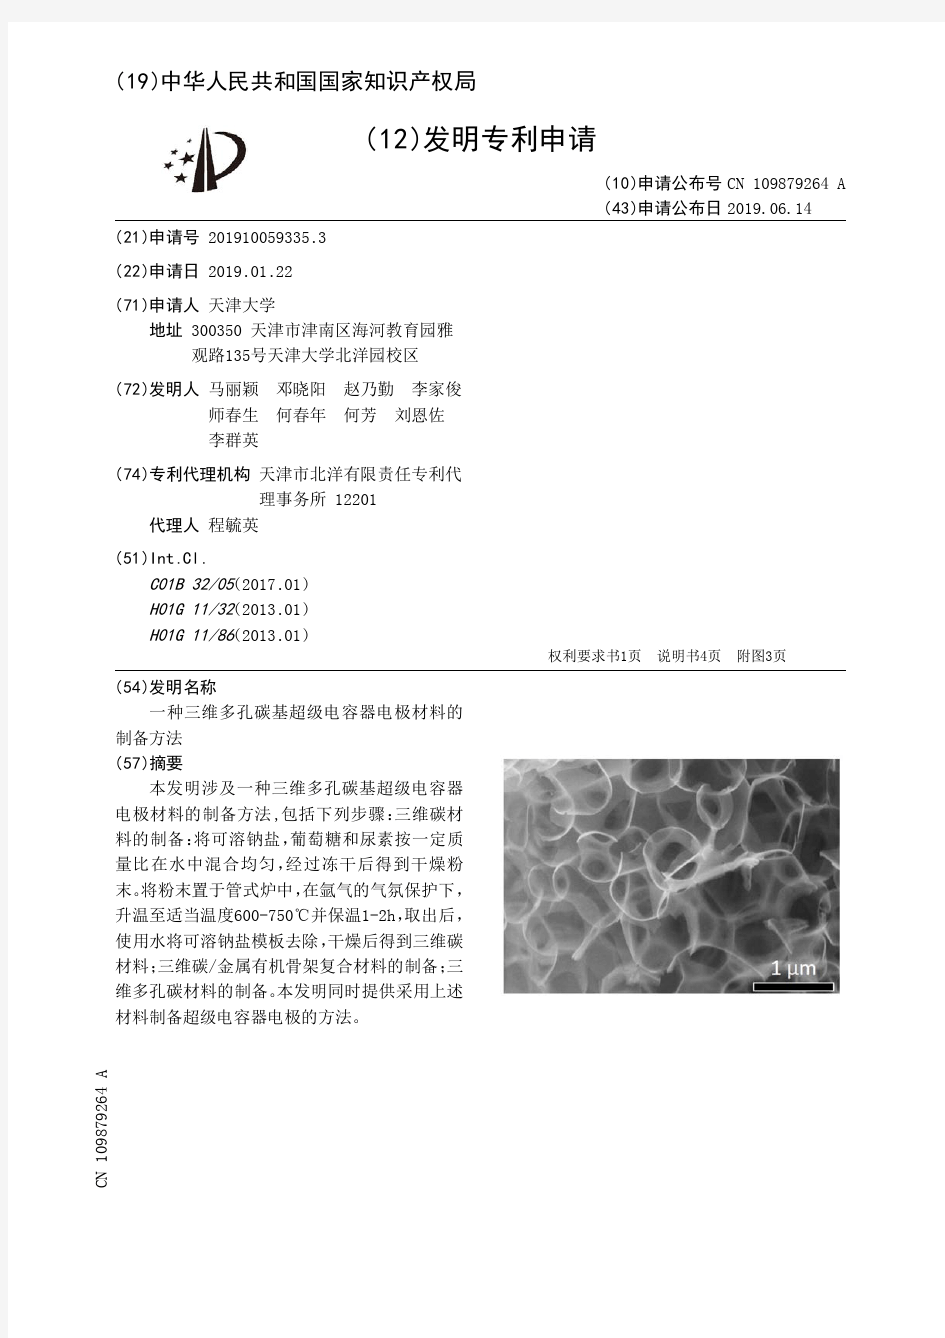 【CN109879264A】一种三维多孔碳基超级电容器电极材料的制备方法【专利】